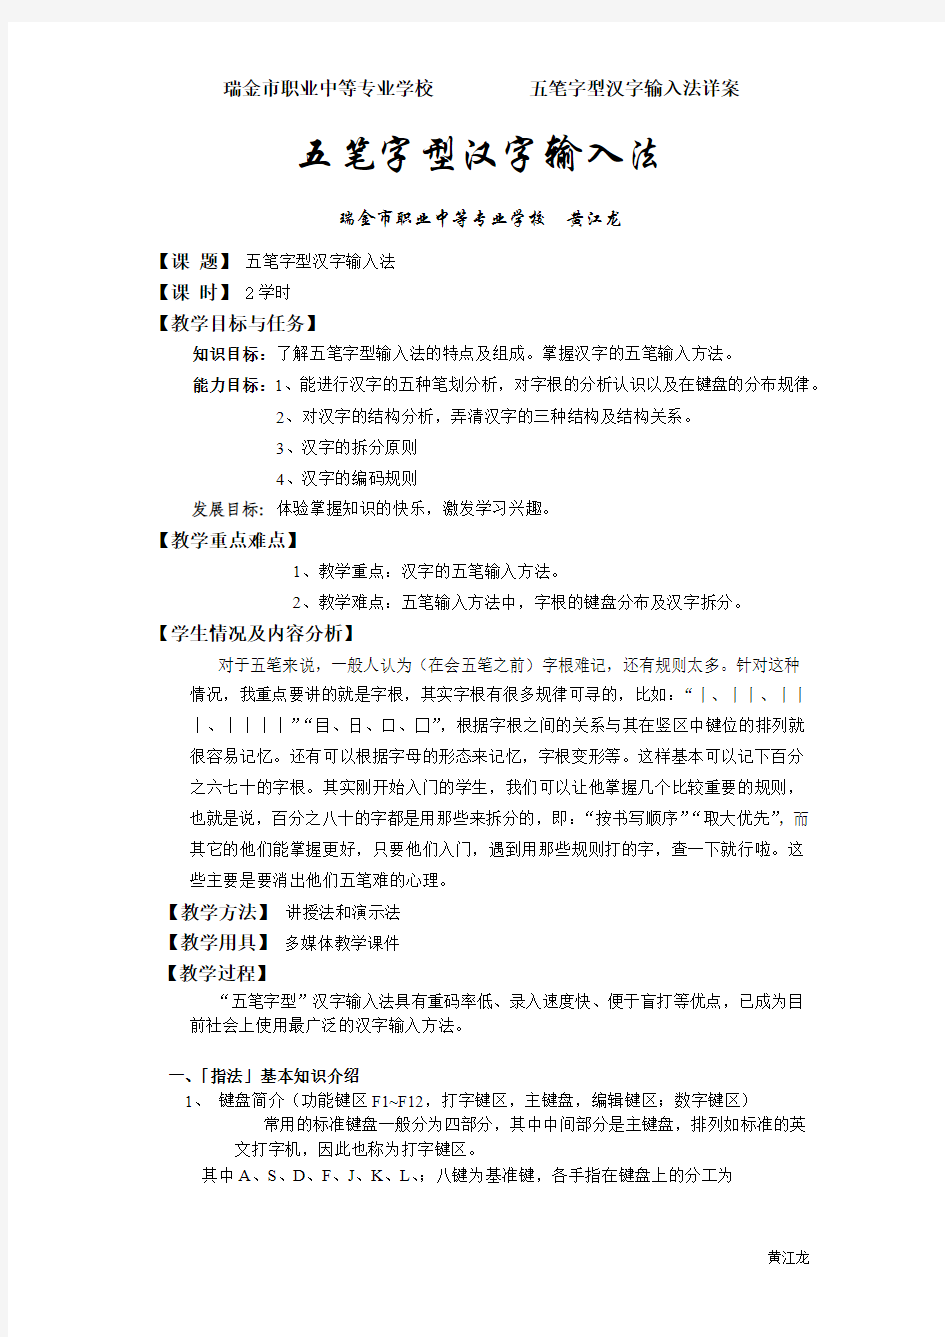 五笔字型汉字输入法